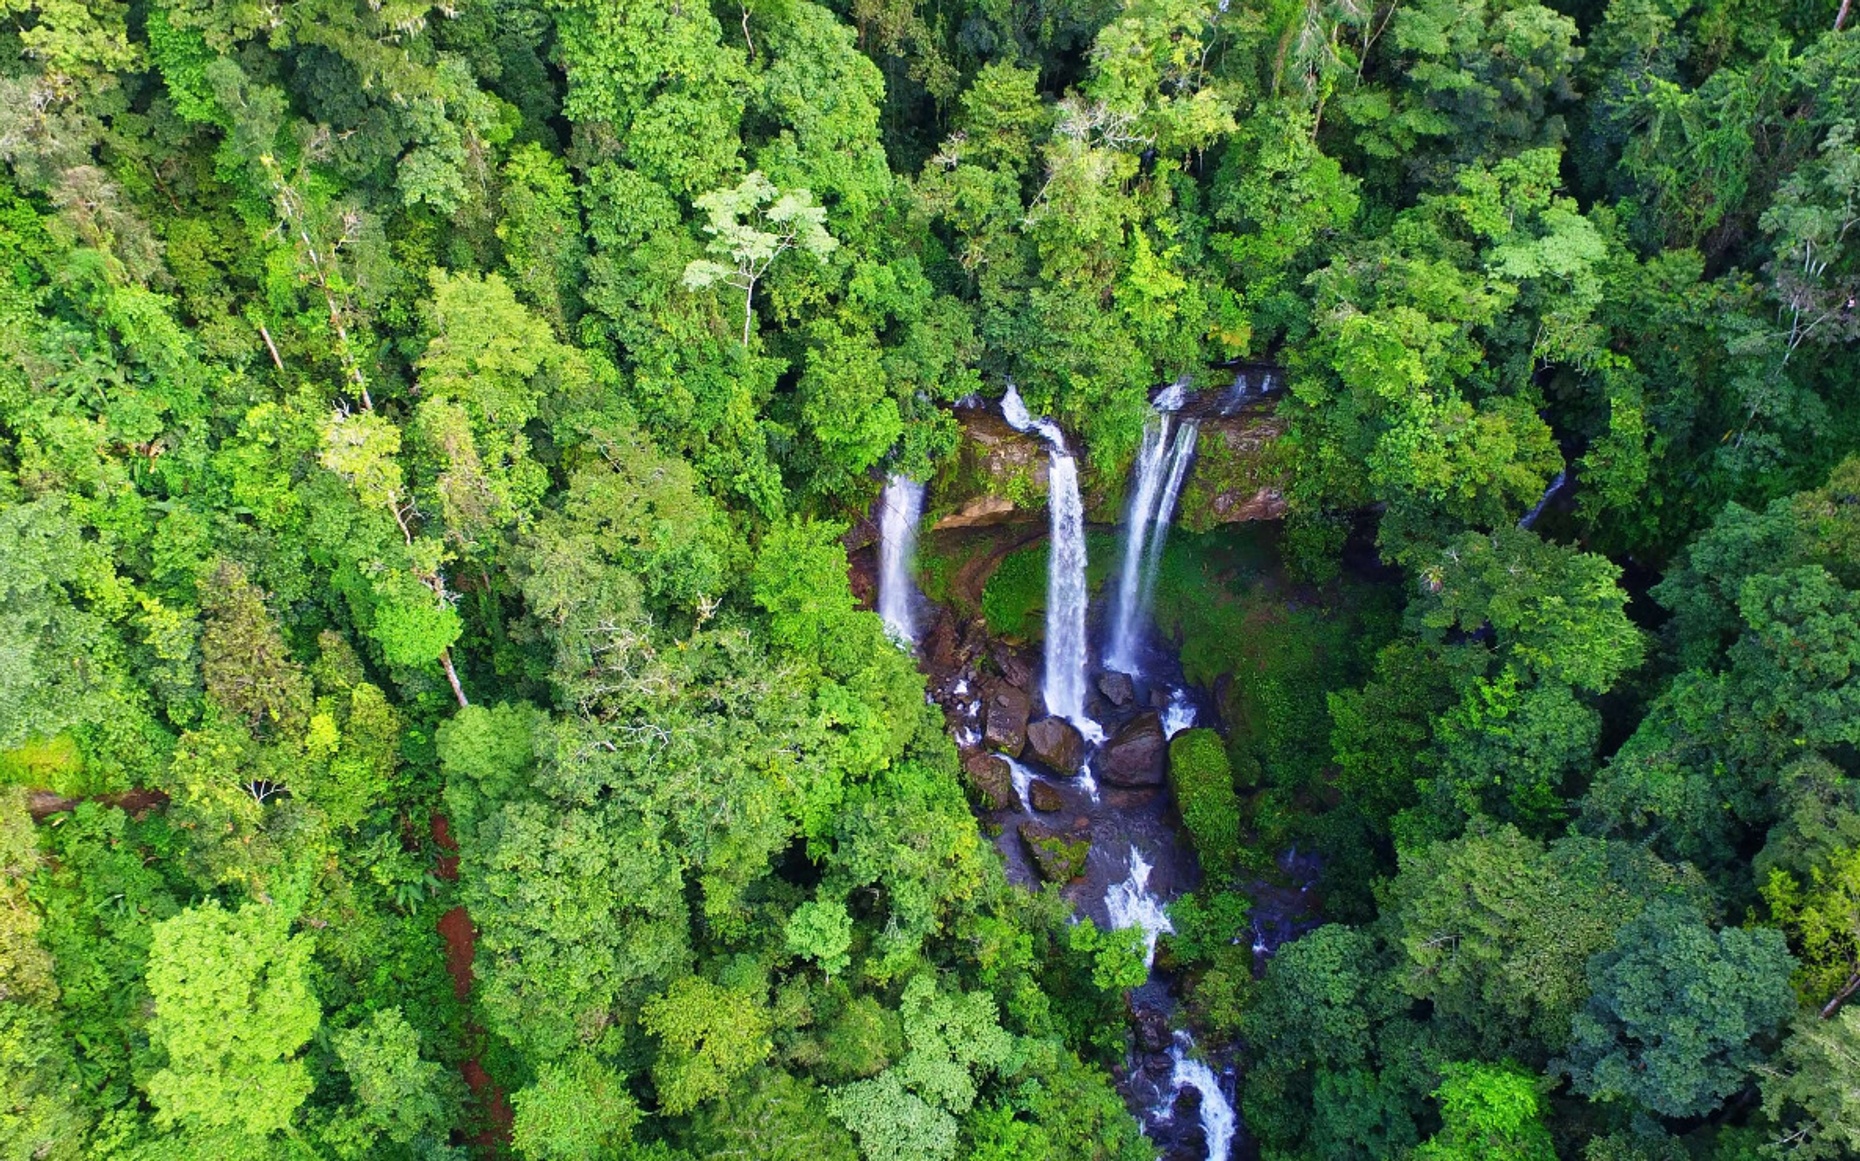 Diamante Waterfall & Cave Overnight Adventure in Costa Rica